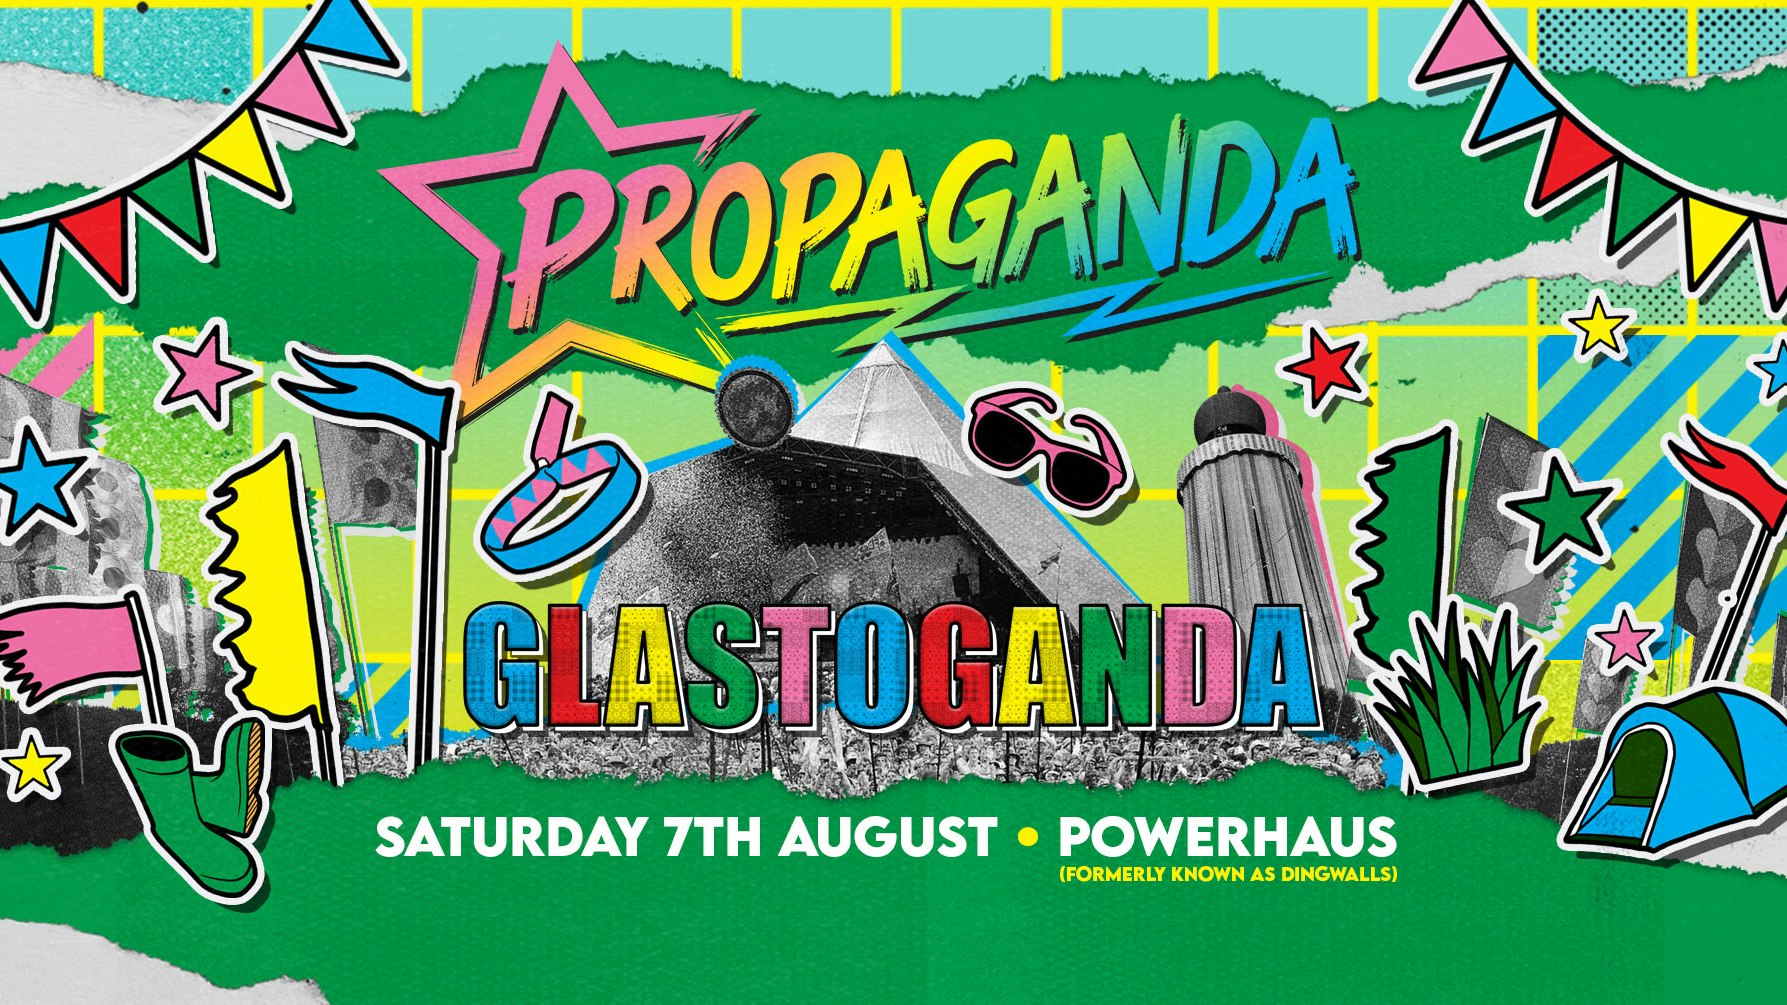 Propaganda London – Glastoganda Party!